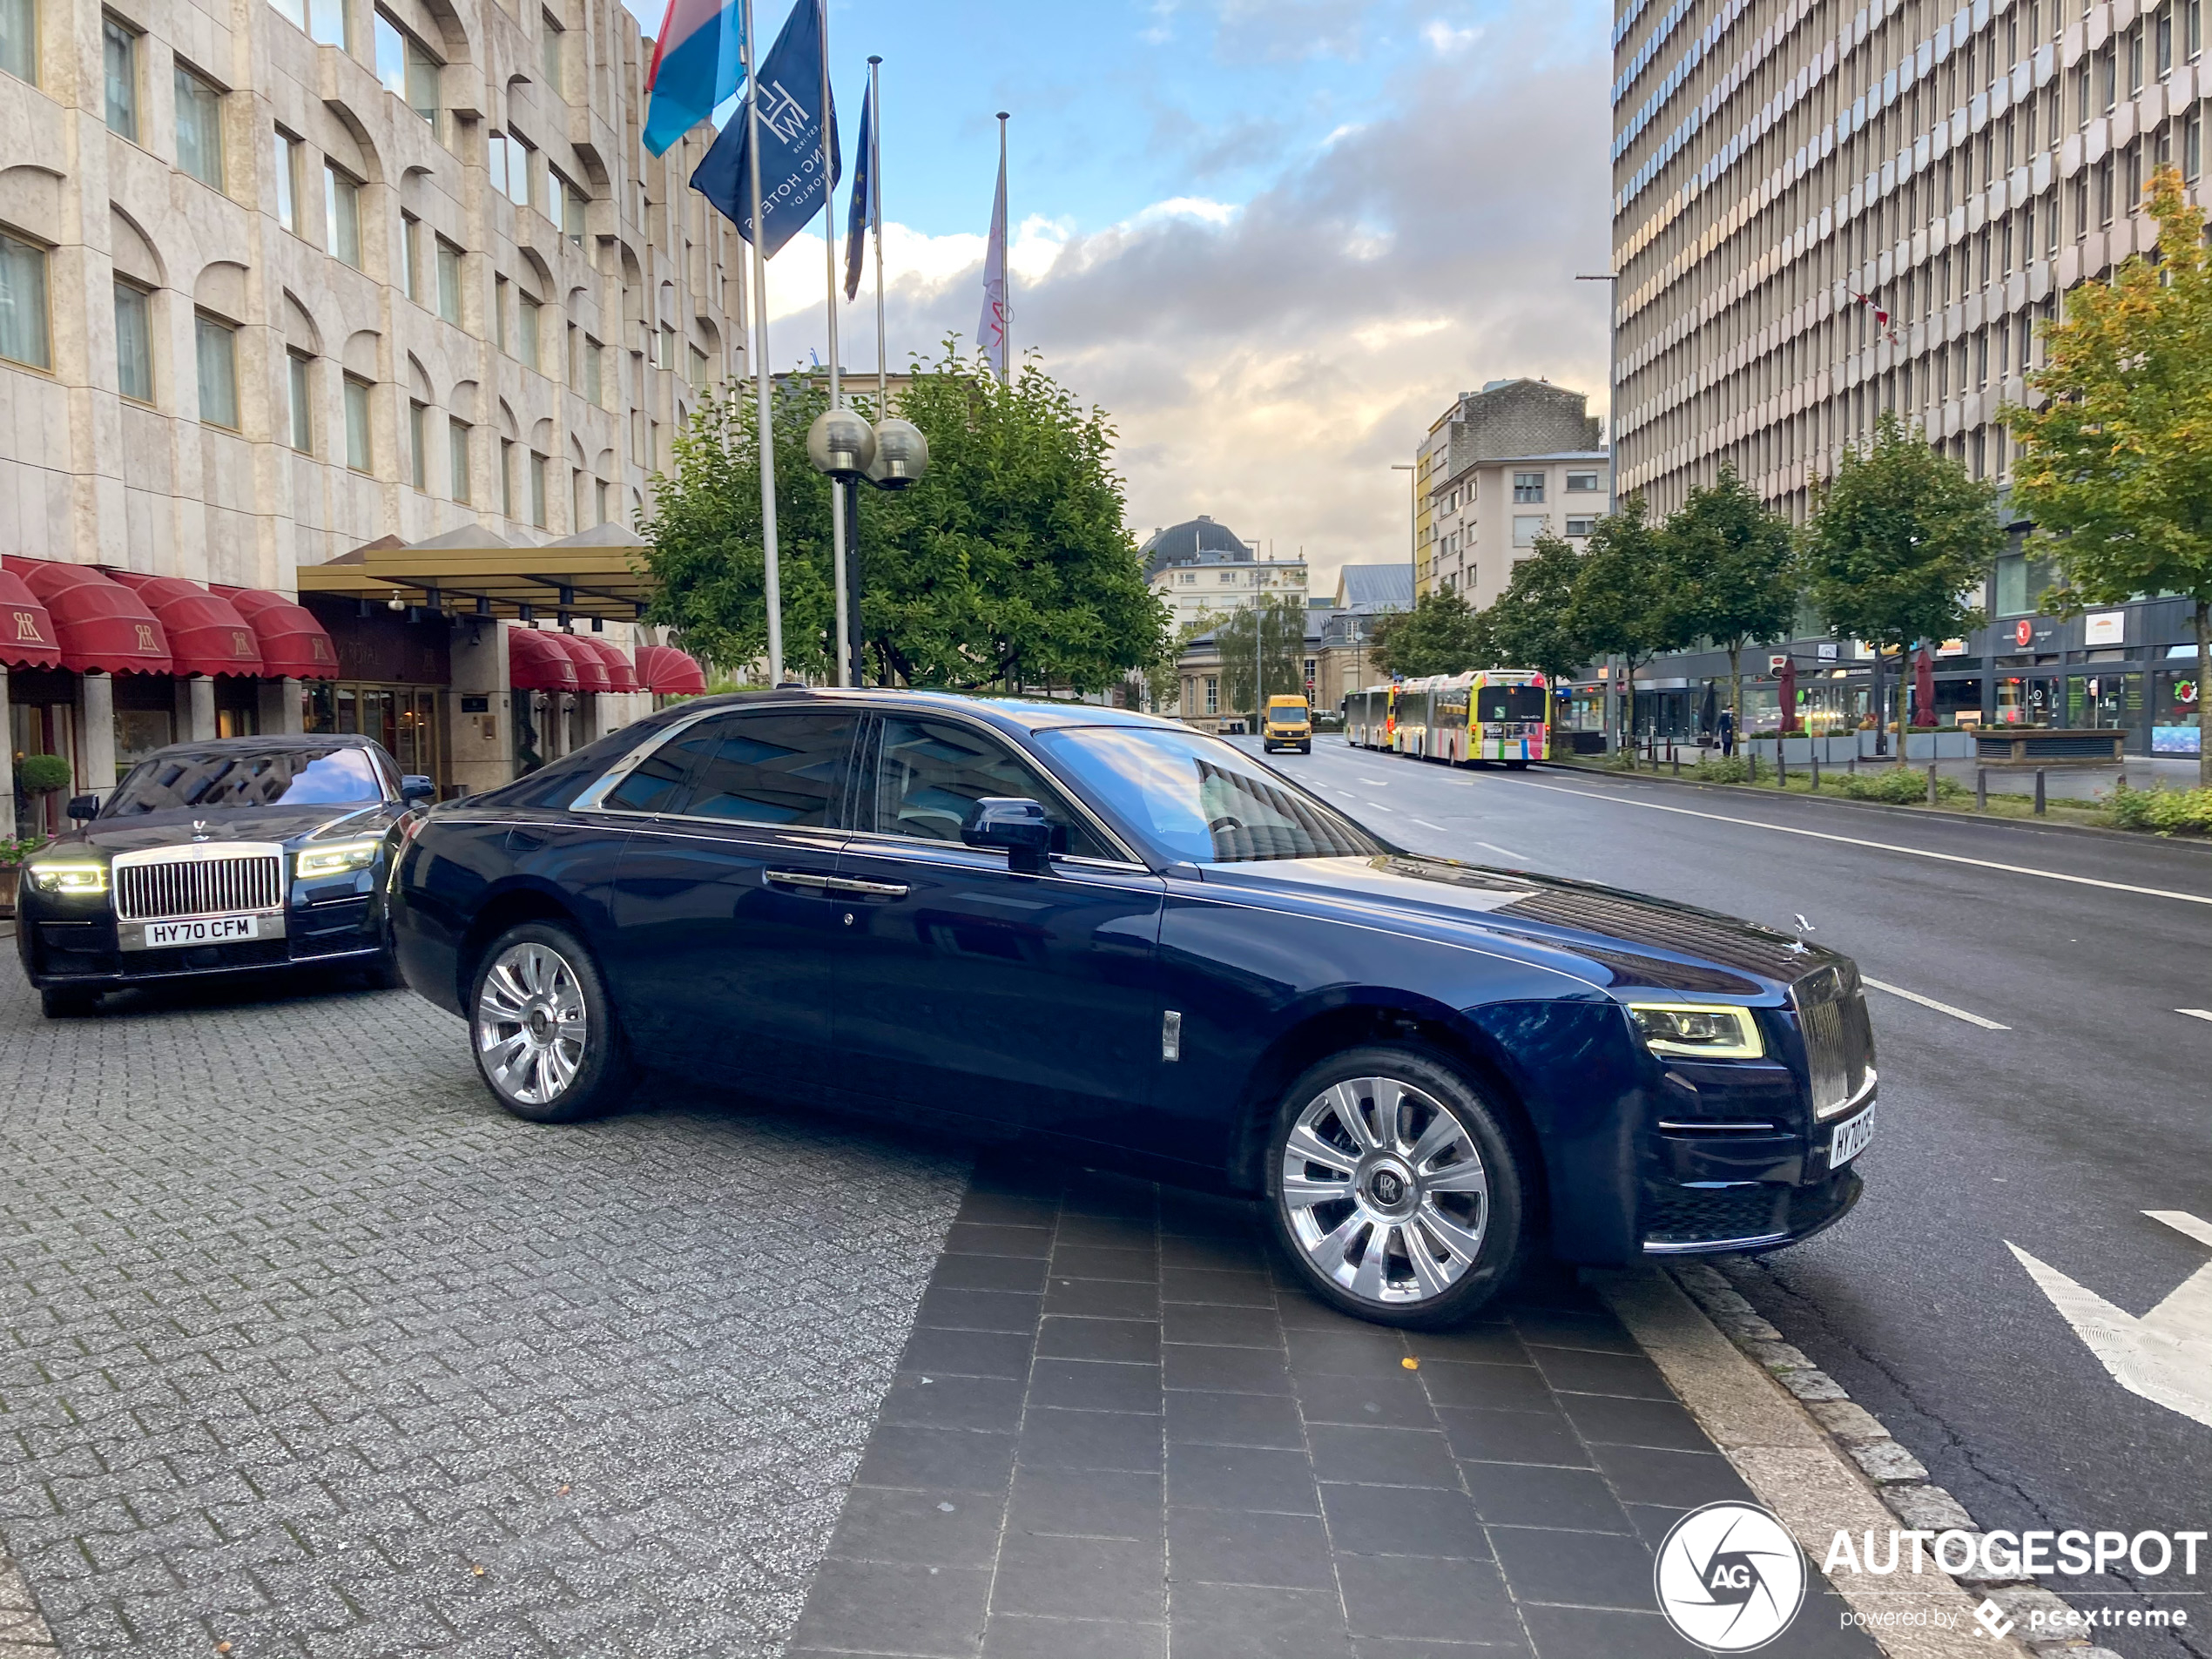 Daar is hij dan: nieuwe Rolls-Royce Ghost gespot op straat